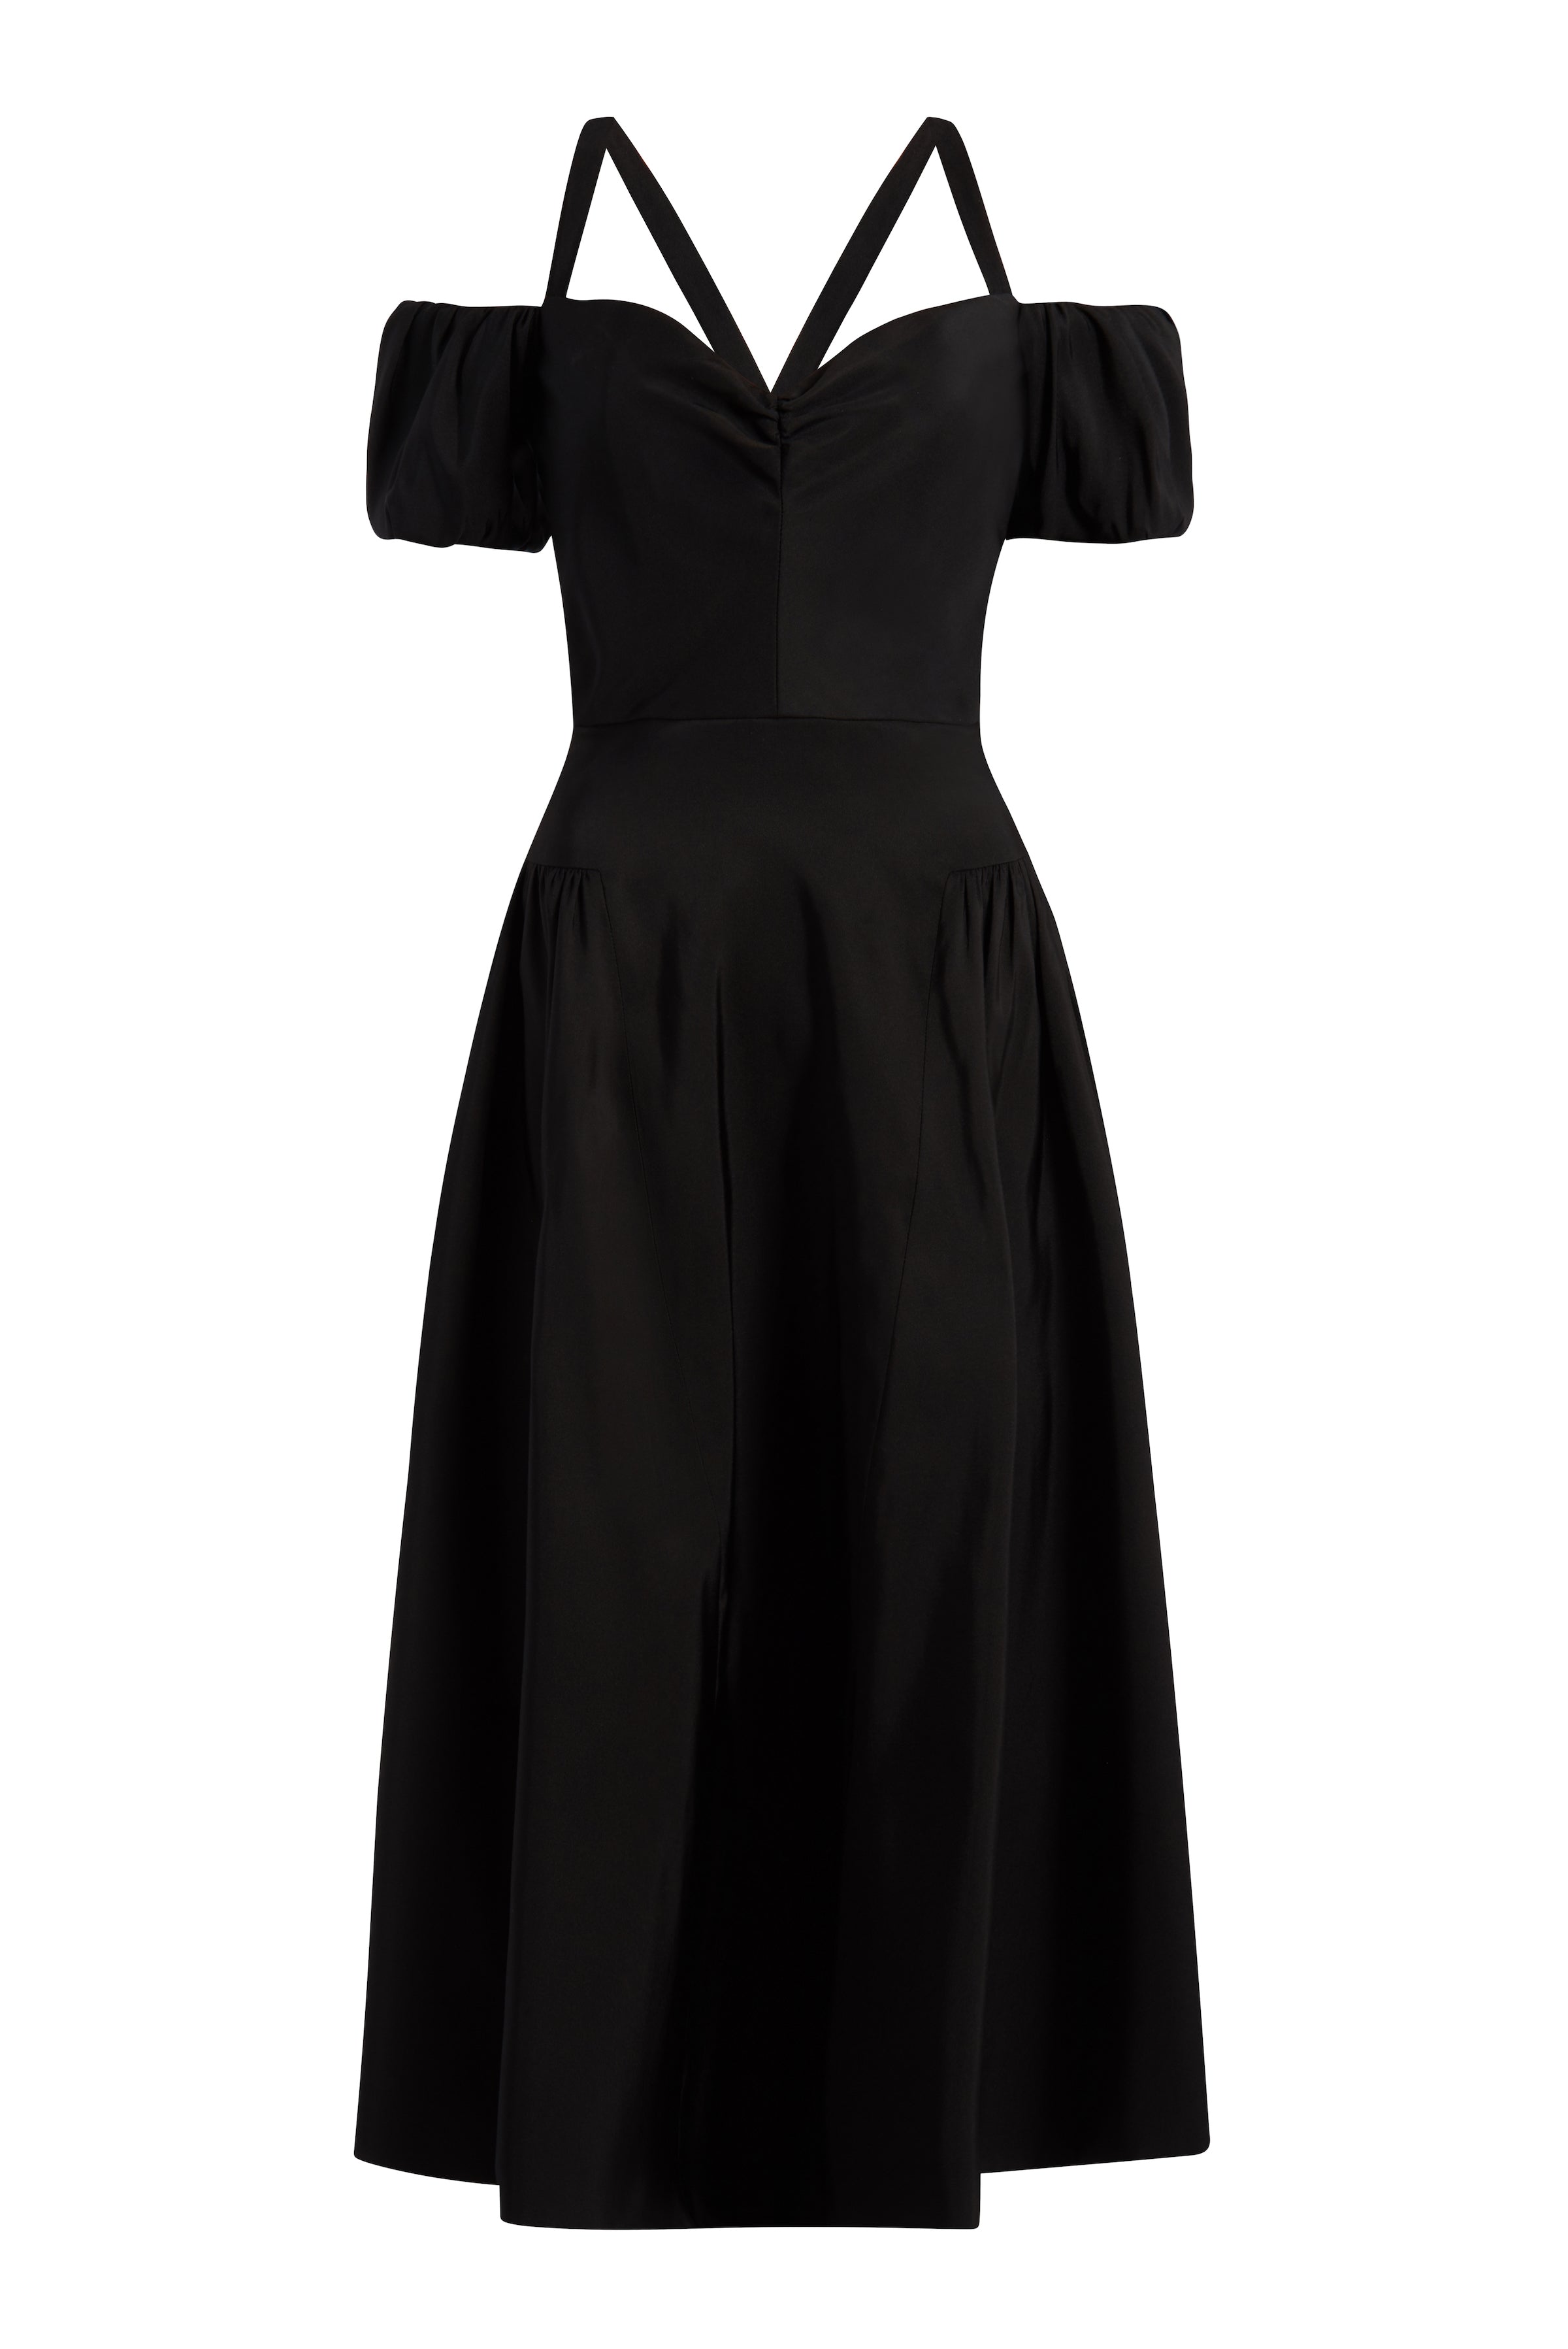 SALE: Jackie Black Off-the-Shoulder Midi Dress